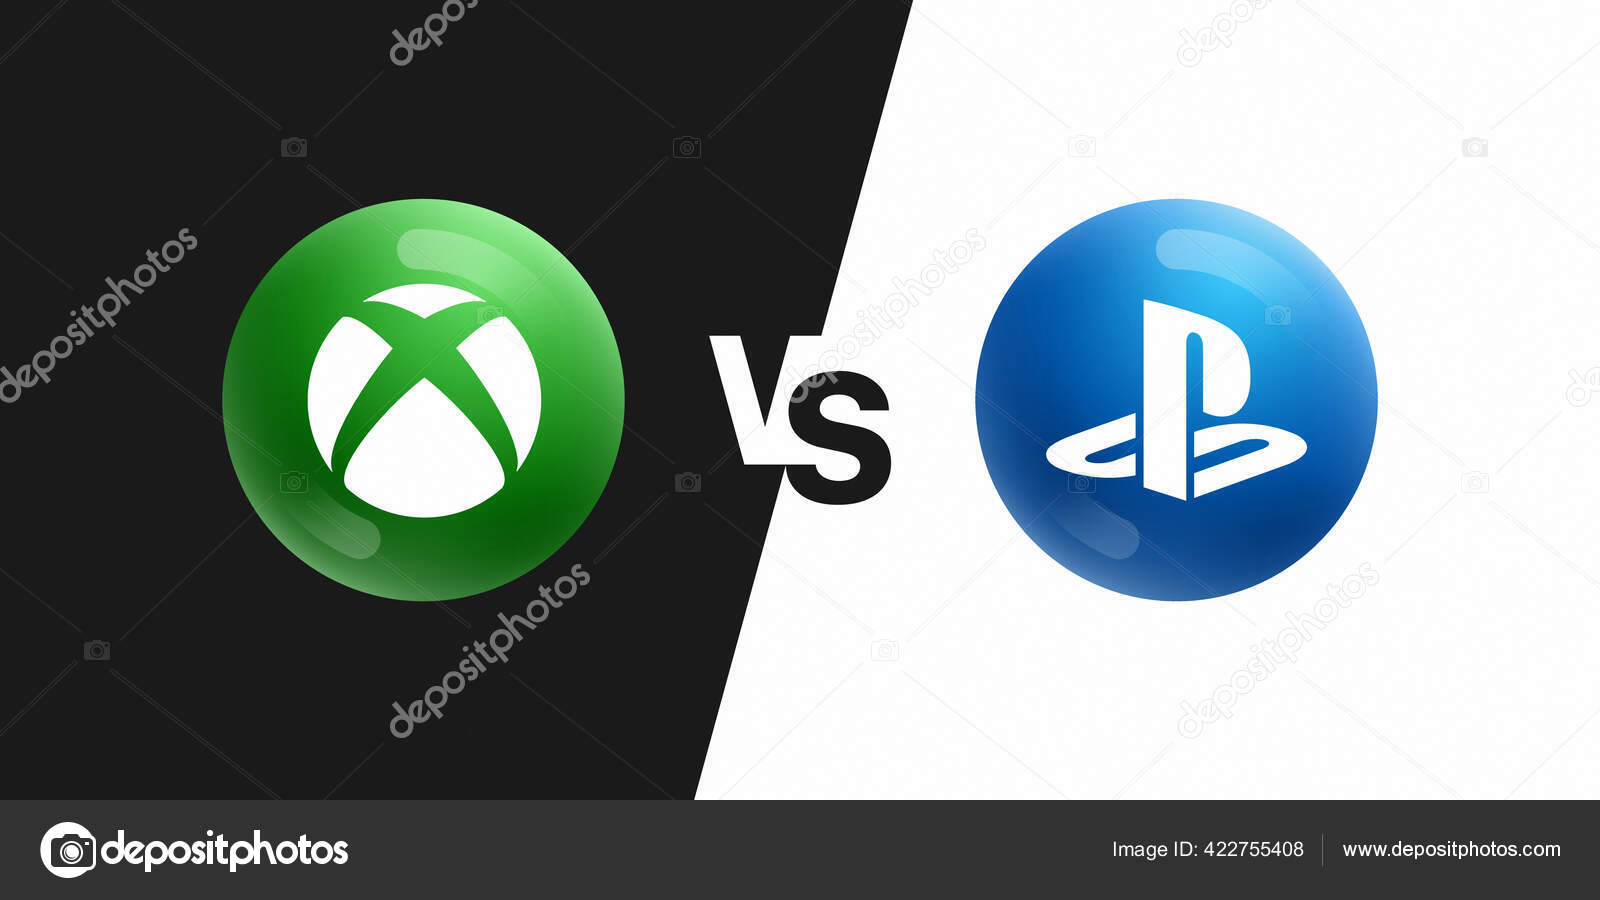 Với những ai đang phân vân giữa việc chọn mua Xbox Series X hay PlayStation 5, hãy đến với BXH và xem ngay những biểu tượng 3D Vector icons đẹp mắt của hai sản phẩm này để đưa ra quyết định chính xác cho mình!